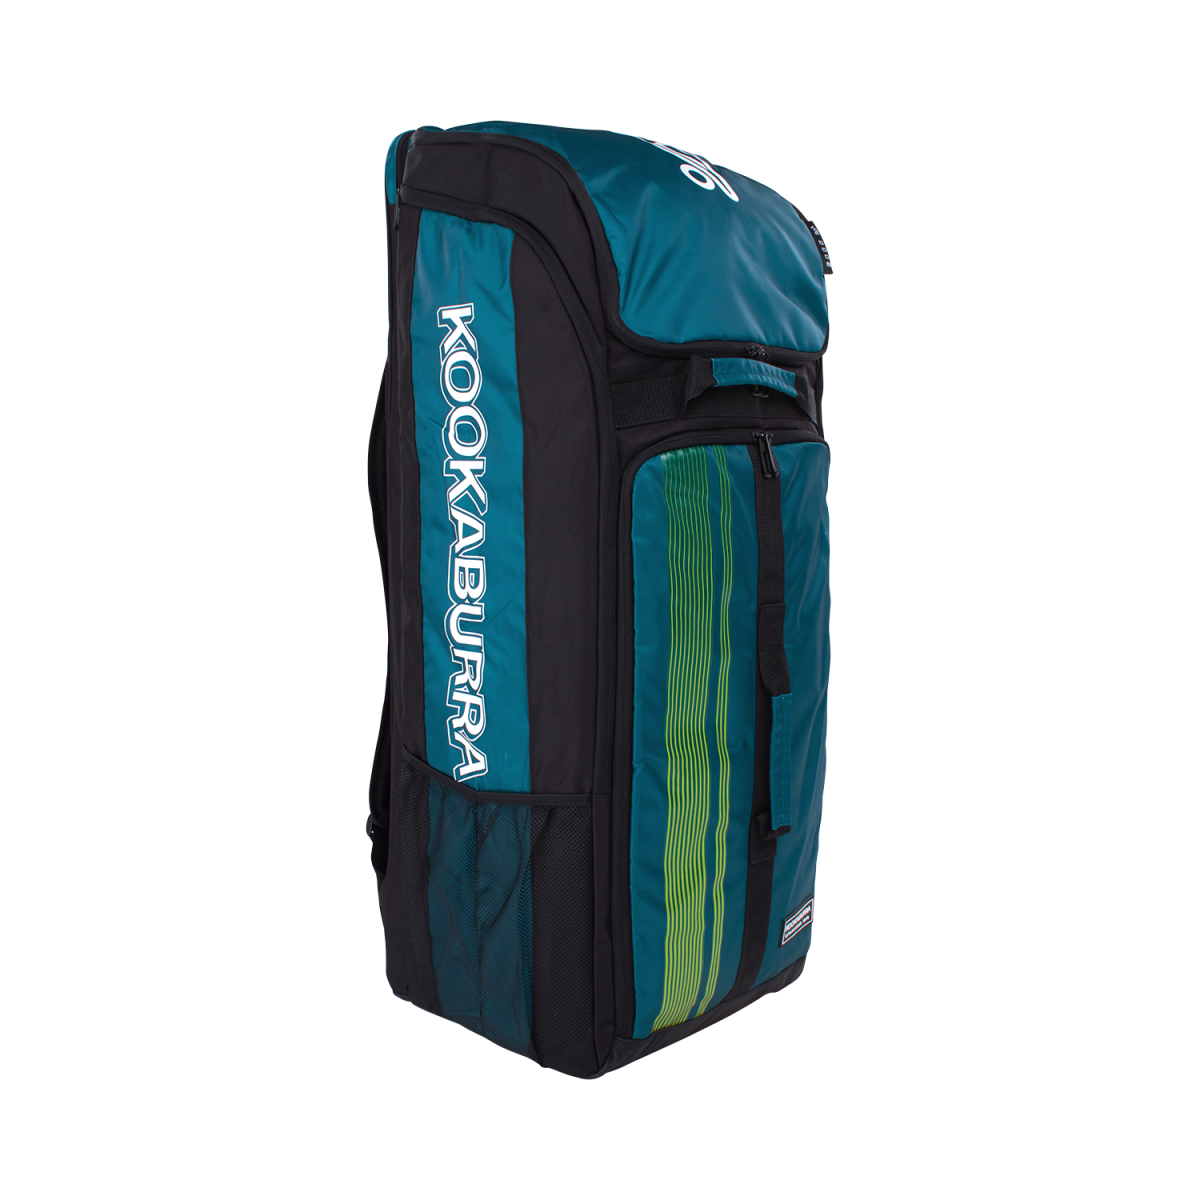 Kookaburra Pro d2000 Duffle Bag